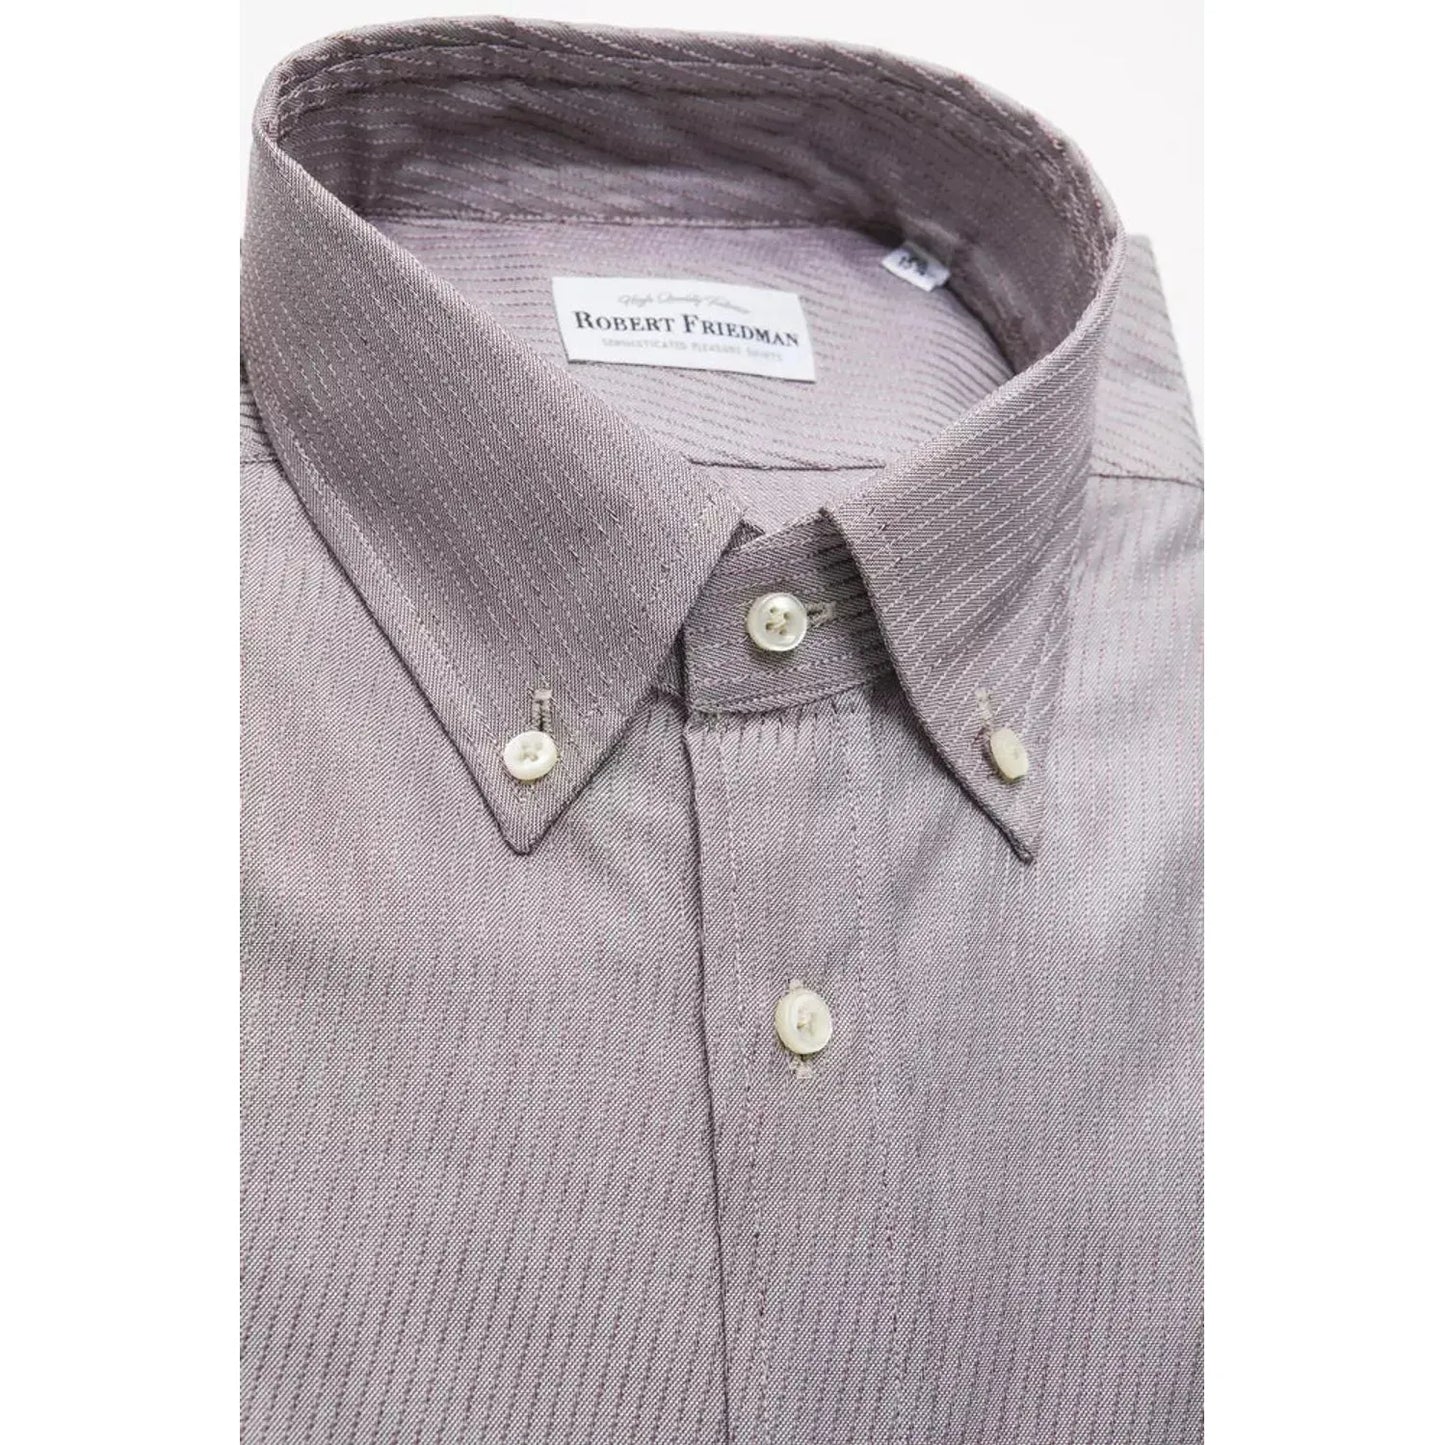 Robert Friedman Beige Cotton Button Down Men's Shirt beige-cotton-shirt-6